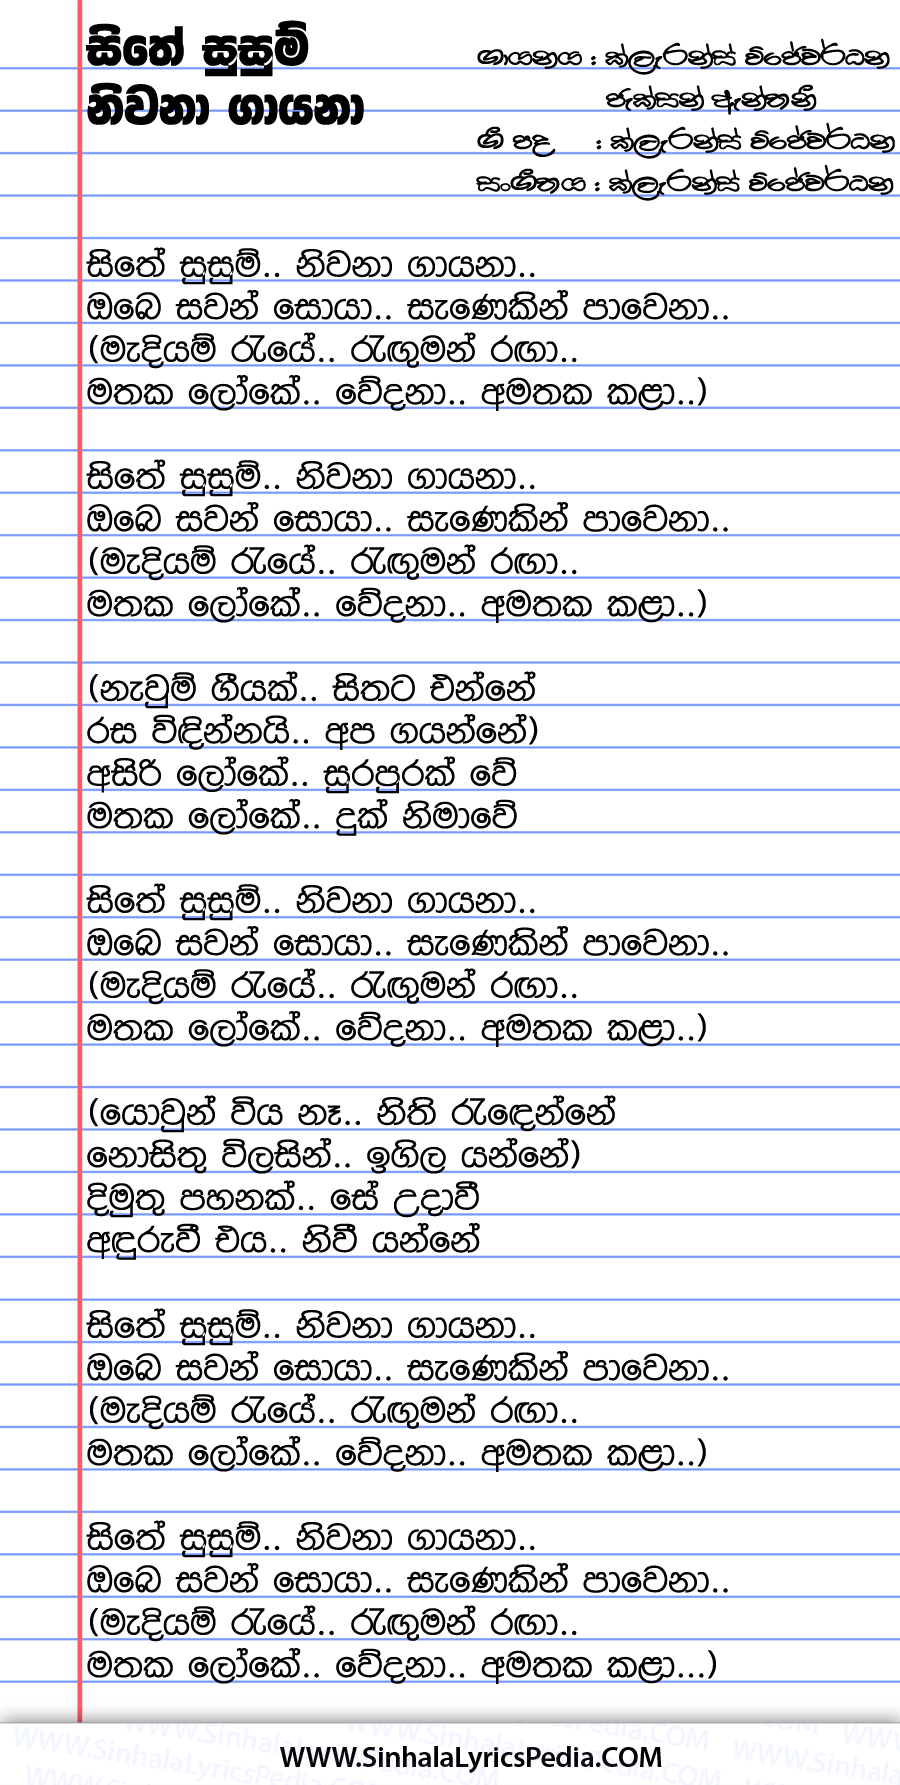 Sithe Susum Niwana Gayana Song Lyrics